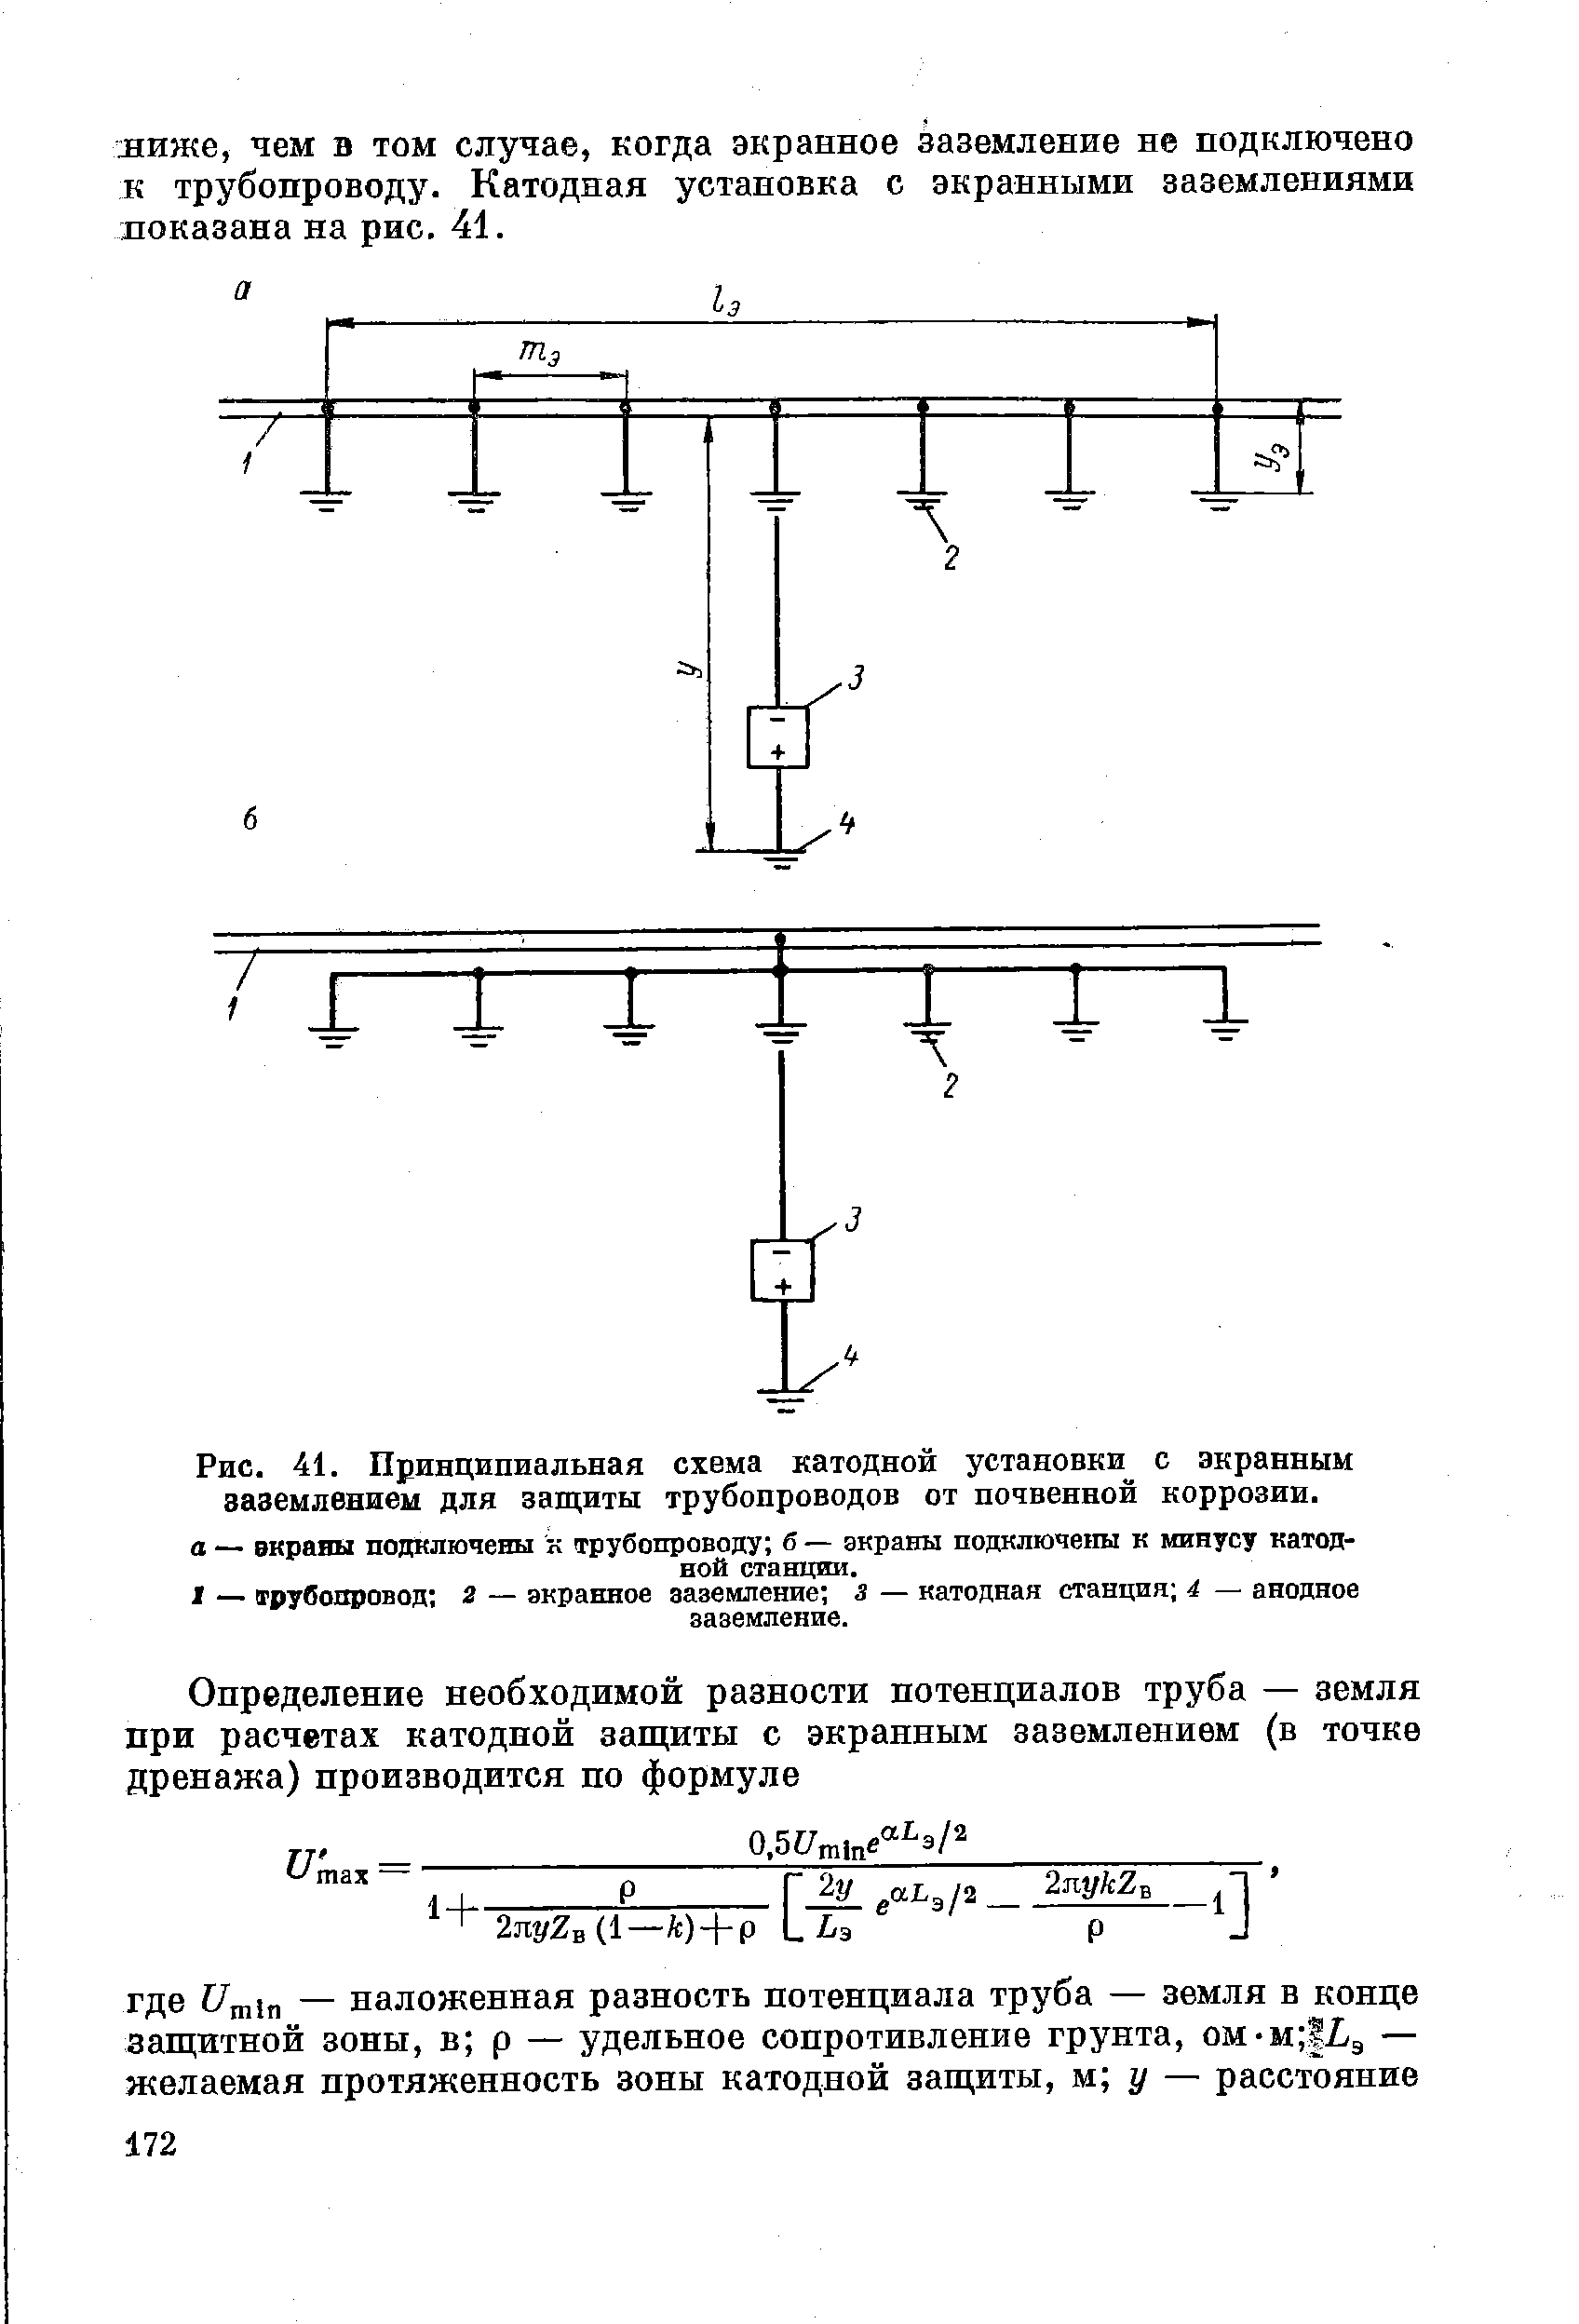 Рис. 41. Принципиальная схема катодной установки с экранным заземлением для защиты трубопроводов от почвенной коррозии.
